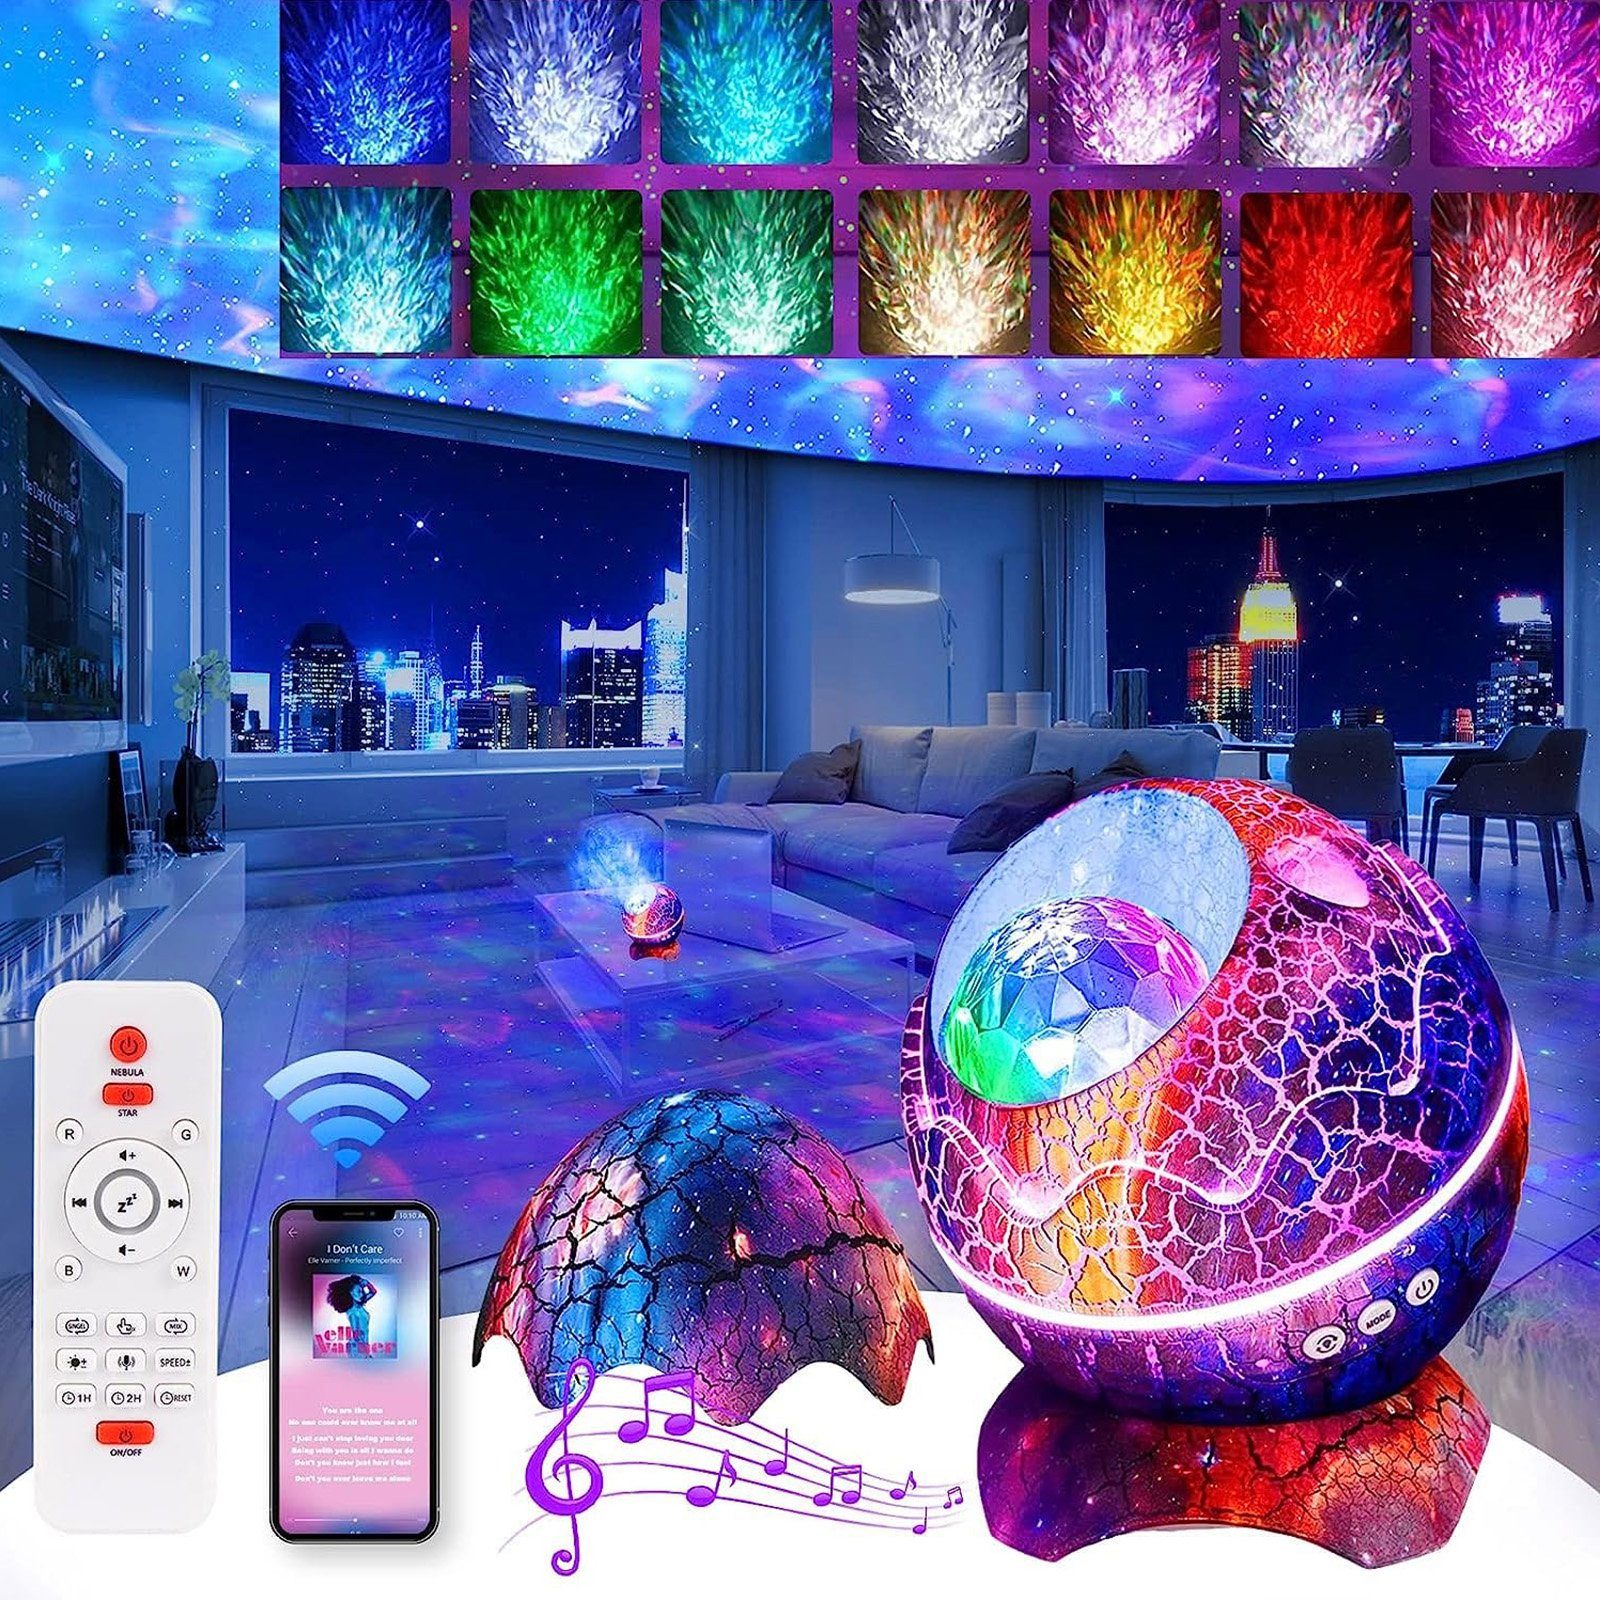 Rosnek LED Nachtlicht 14 Farben, weißes Rauschen, für Kinderzimmer Wohnzimmer Party Deko, Ohne Mikrofon, Farbwechsler, Bluetooth-Lautsprecher, Fernbedienung Bunt